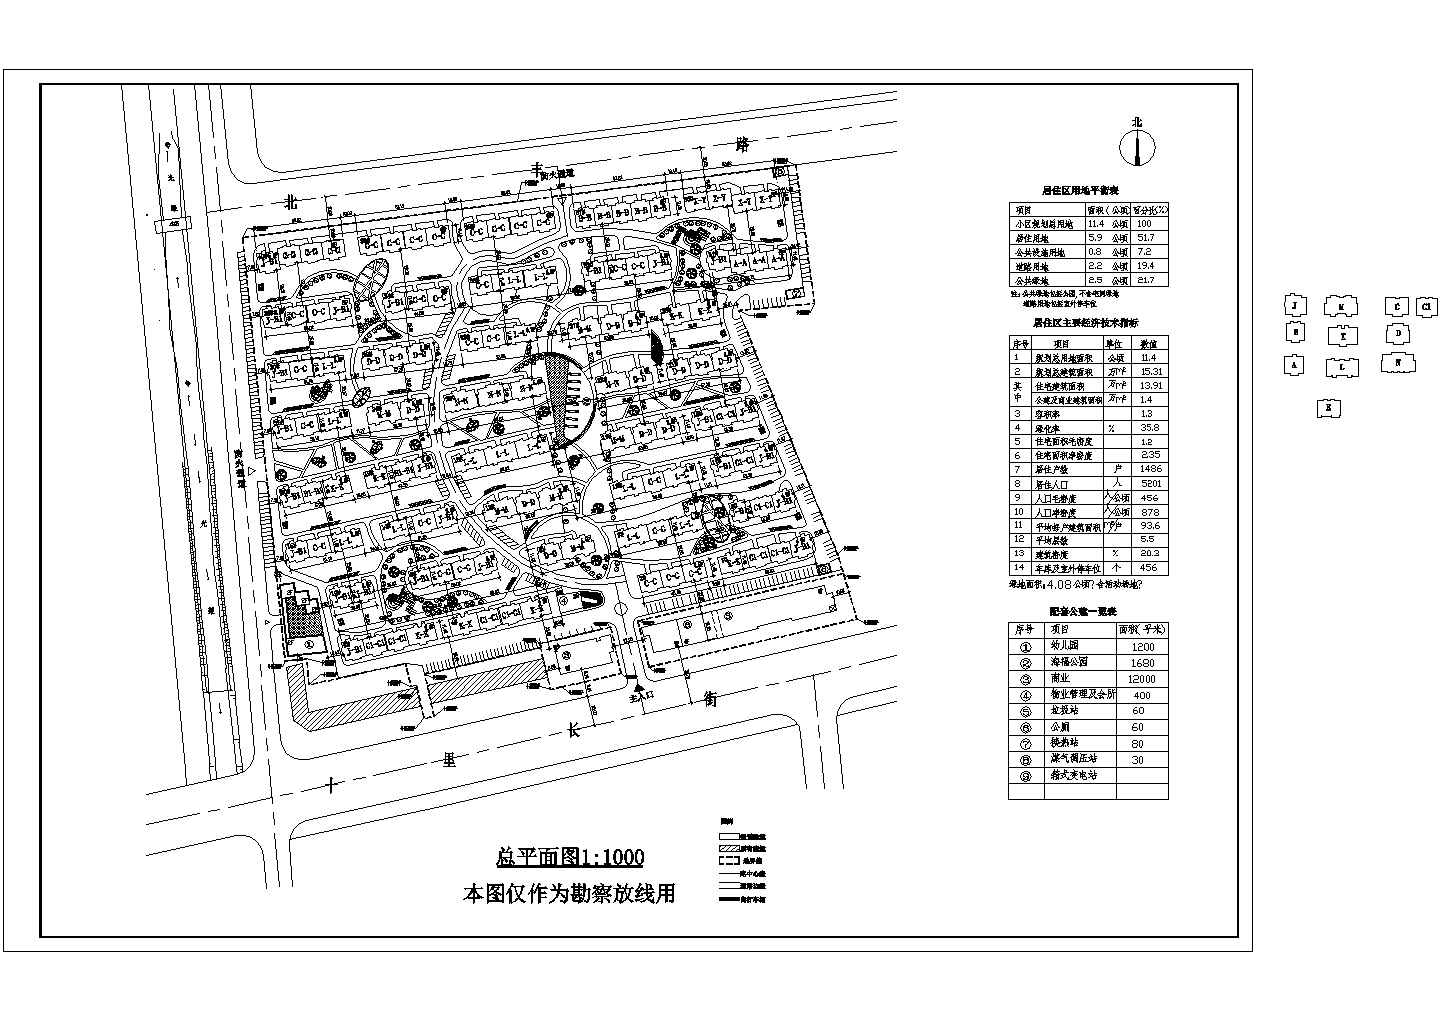 某多层住宅小区1:1000总平面图，包含户型分布图等资料